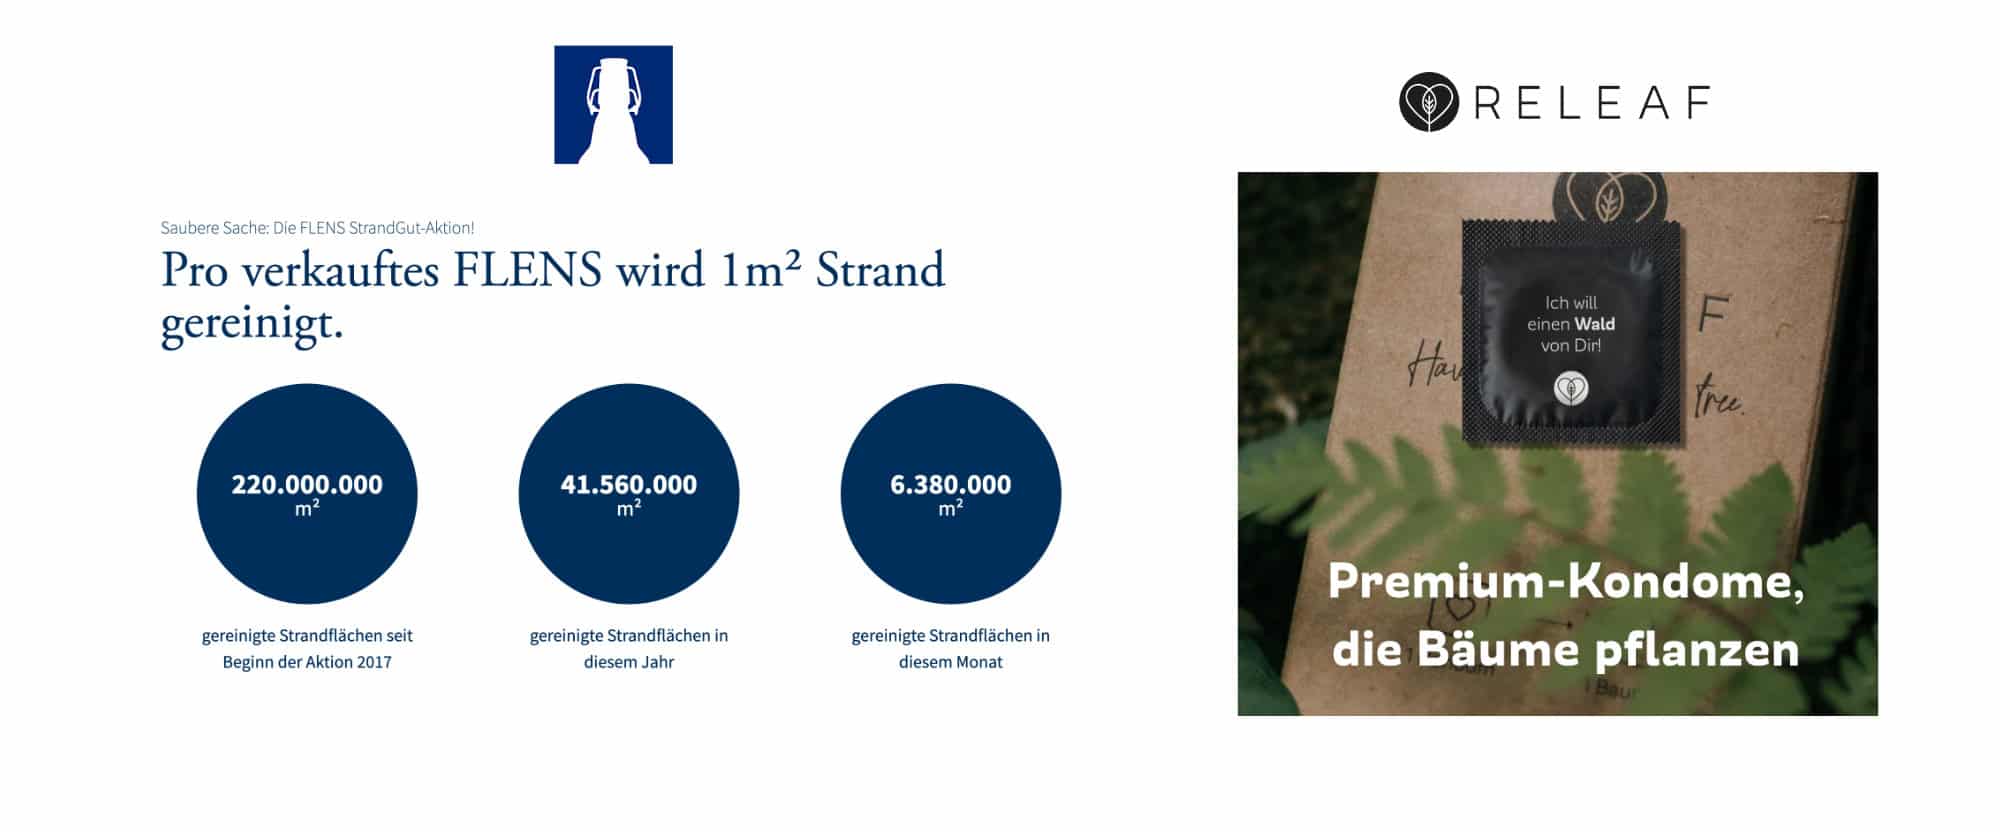 Flensburger Strandgutaktion vs Releaf Kondome. Cause Related Marketing.